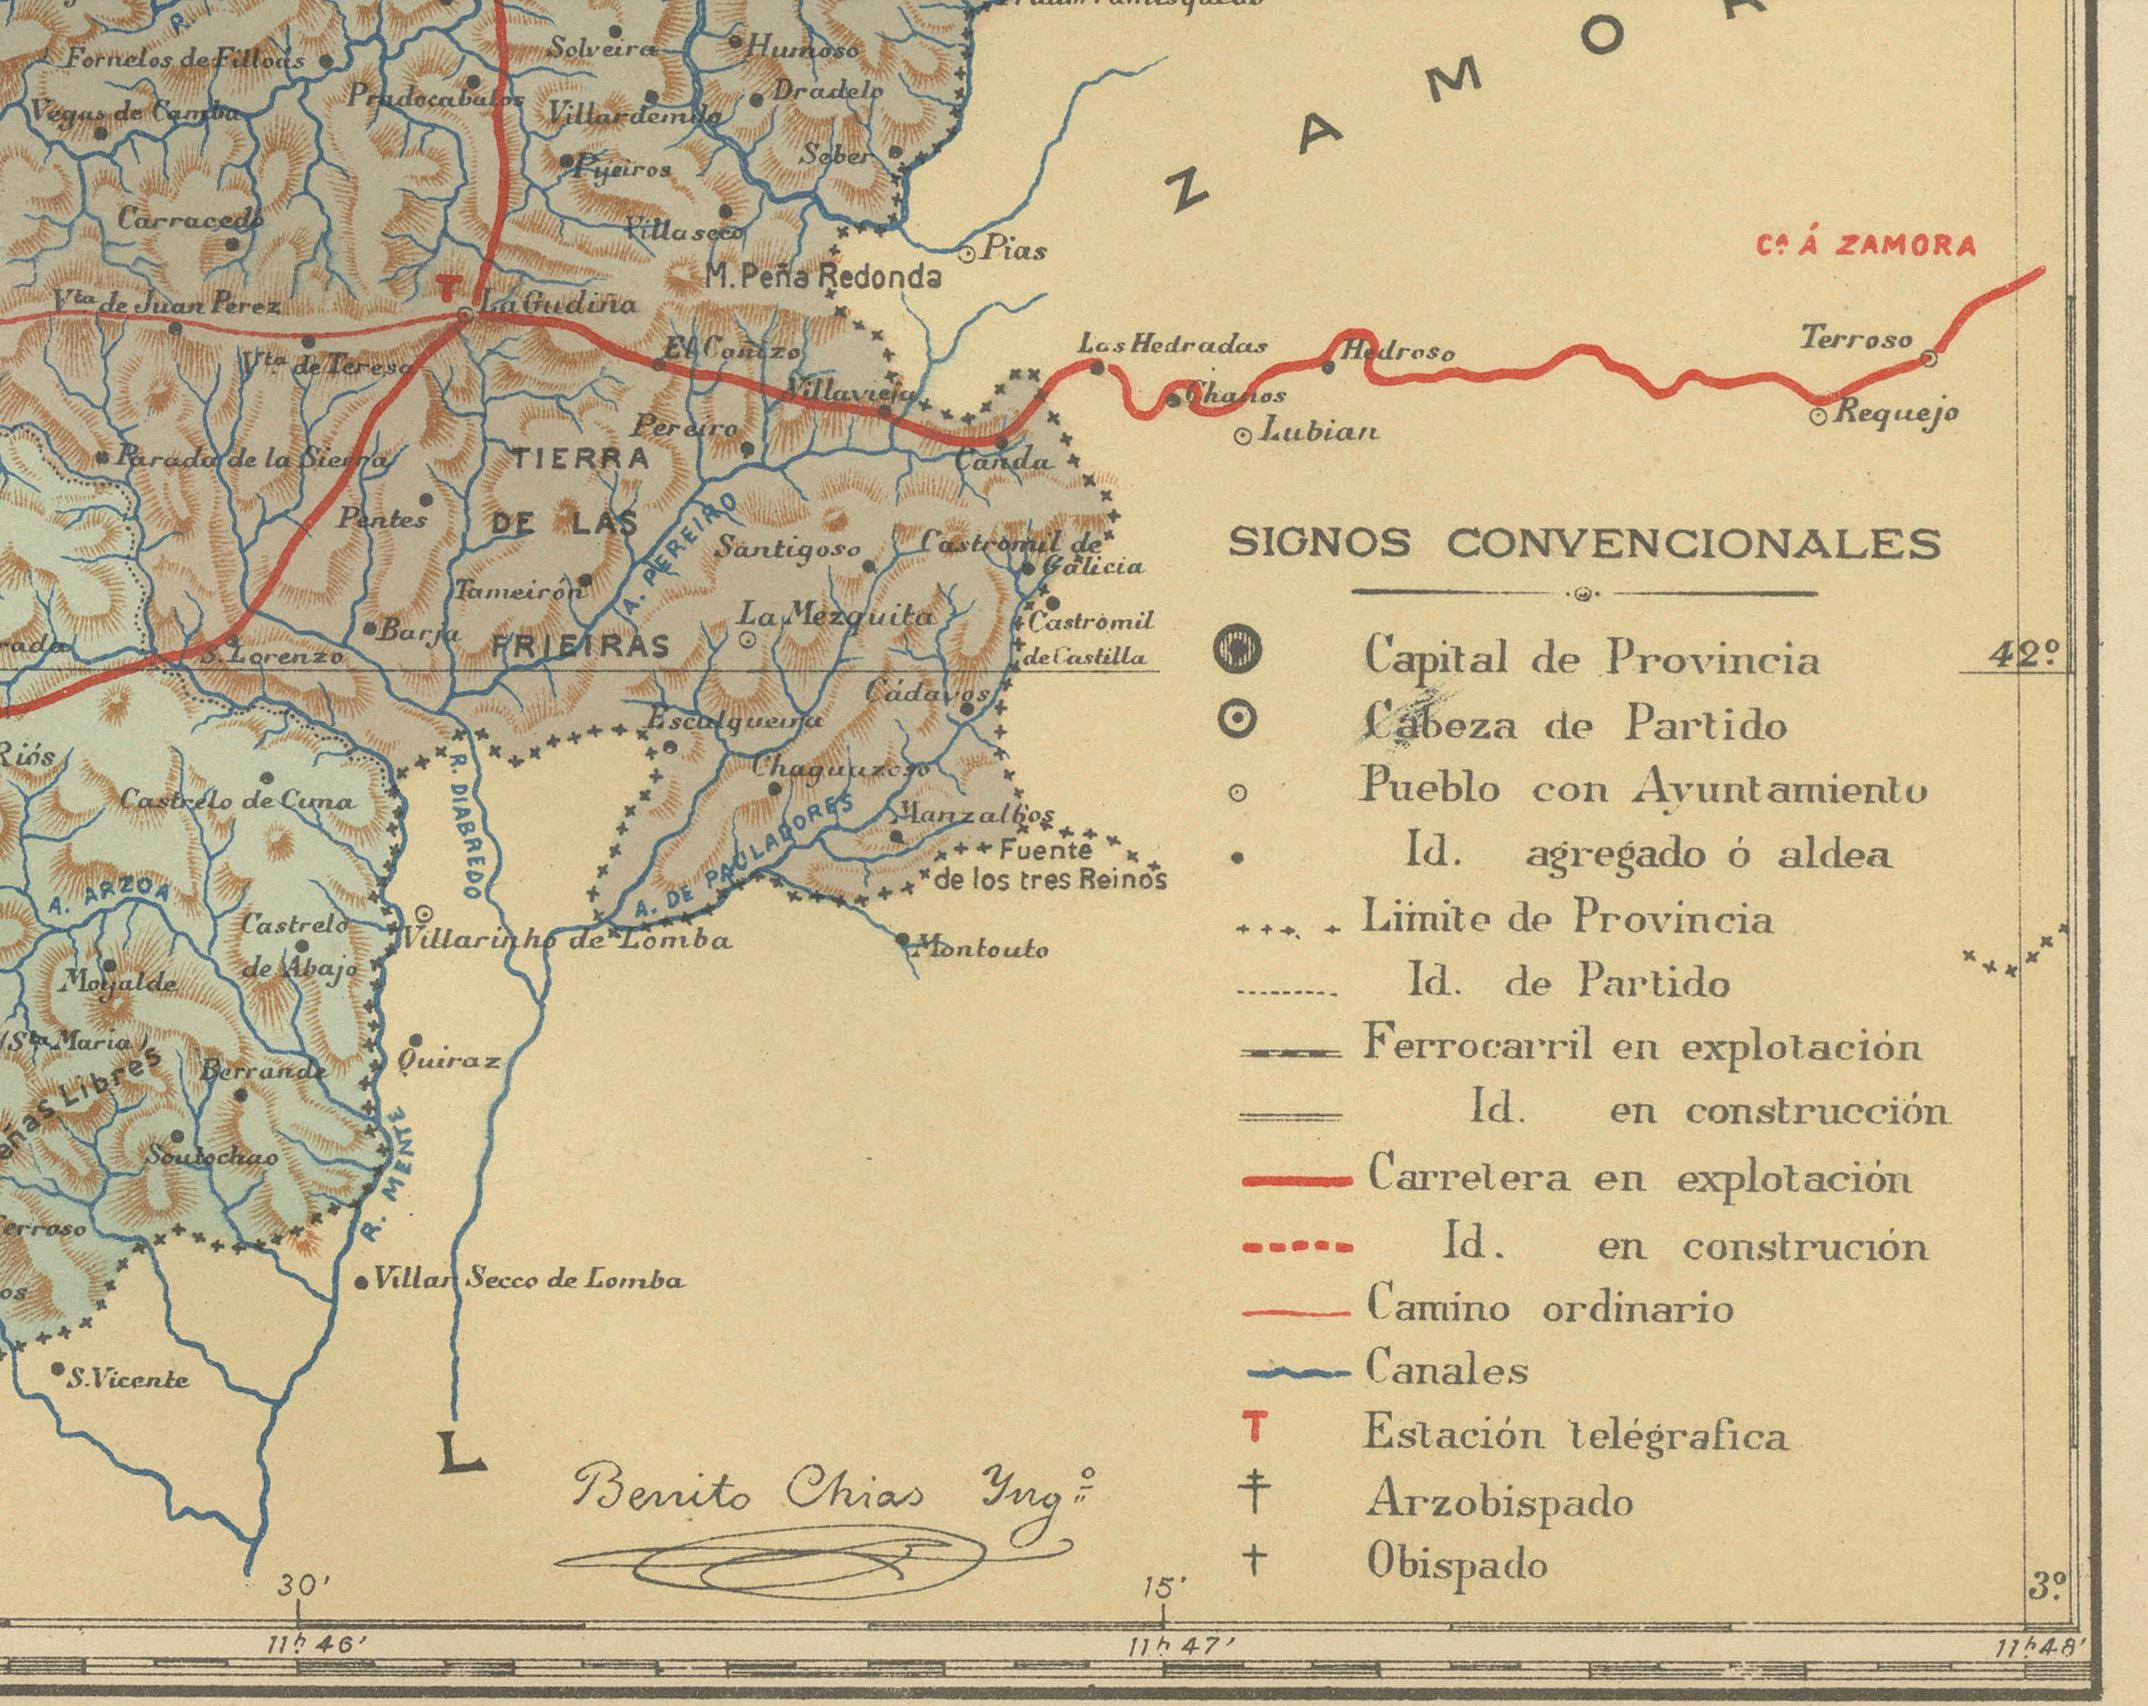 Die Karte ist eine detaillierte kartografische Darstellung der Provinz Orense (Ourense auf Galicisch) im Nordwesten Spaniens im Jahr 1902. Hier ist eine kurze Beschreibung und ein möglicher Titel für die Karte:

Beschreibung:
- Die Karte ist eine